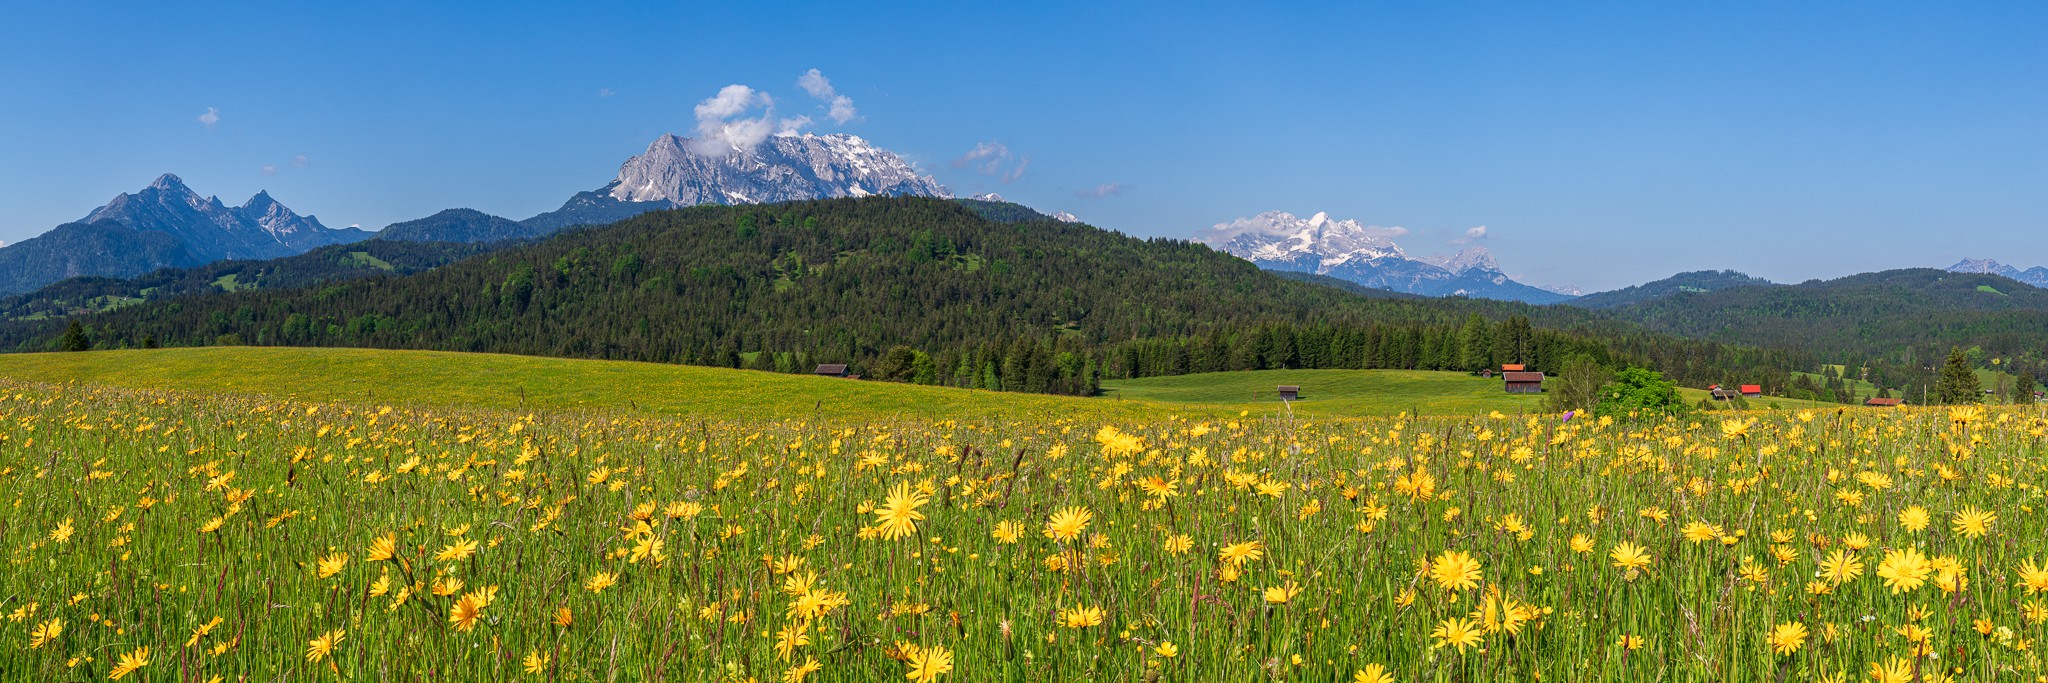 Blumenwiese in den Bergen. Blumenwiese auf den Buckelwiesen zwischen Krün und Mittenwald.